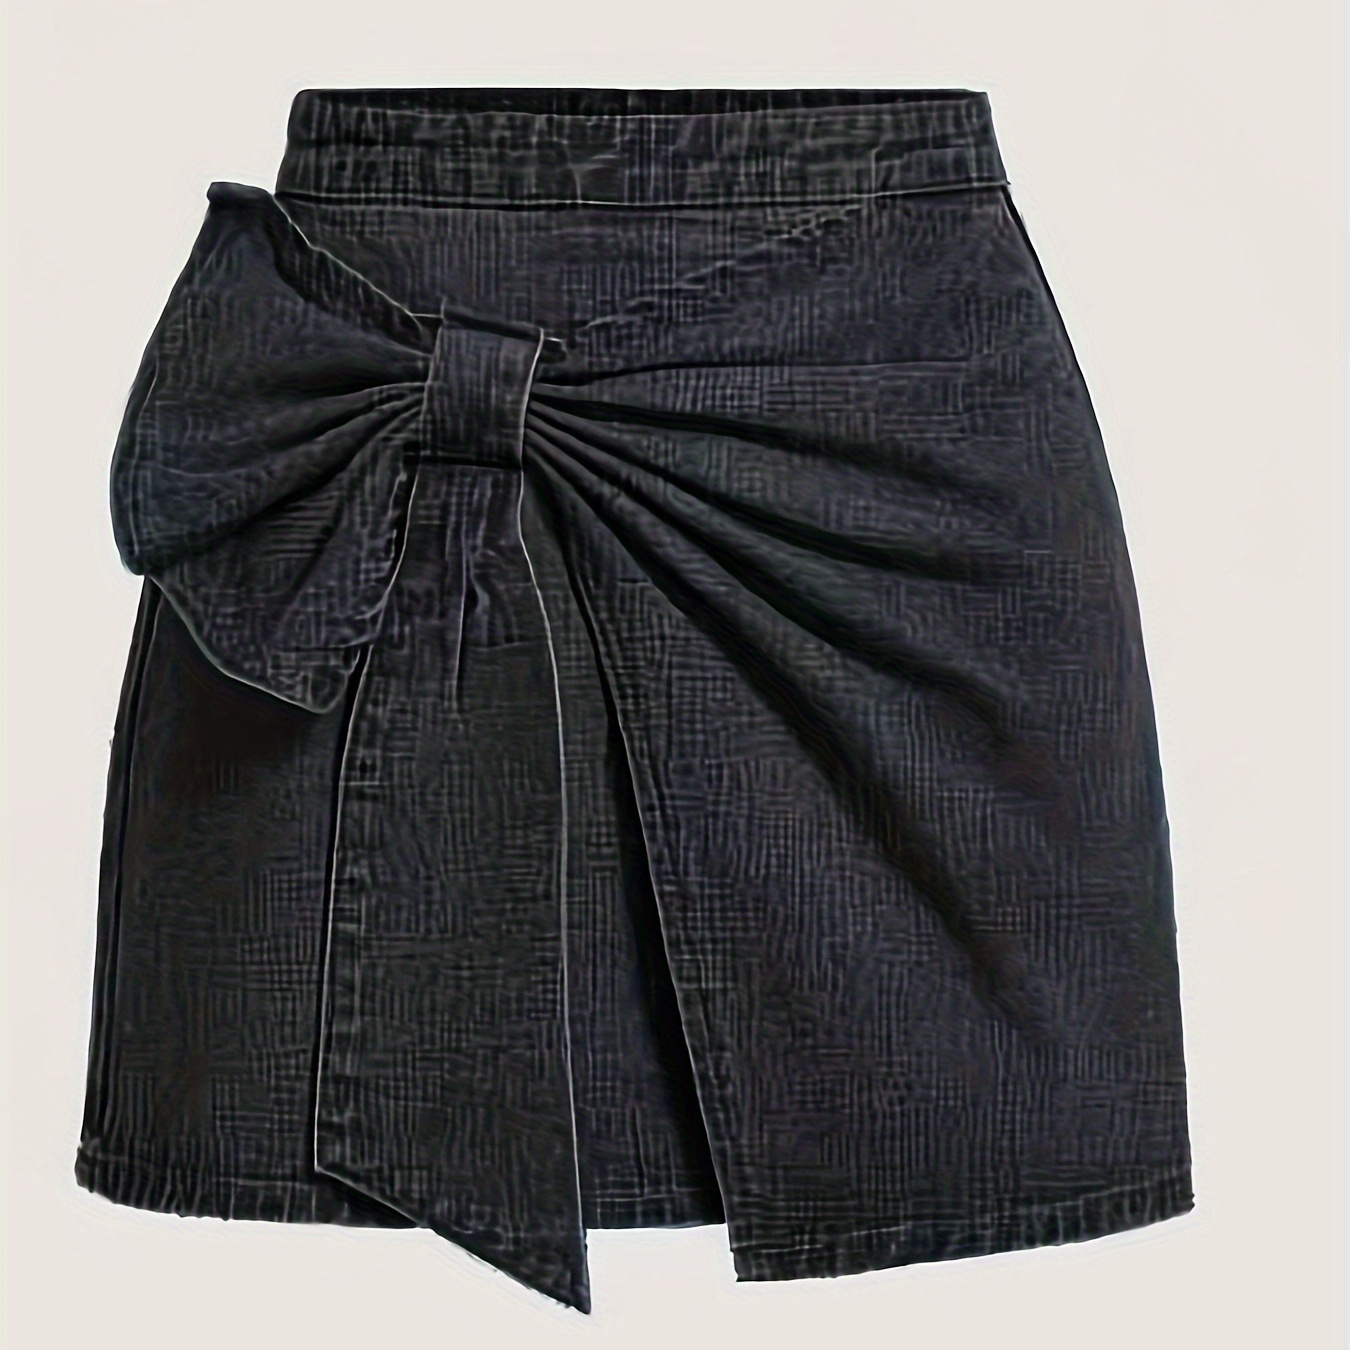 

Plain Black Color Bowknot Decor Denim Skirt, Ruched Elegant Mini Denim Skirt, Women's Denim Jeans & Clothing